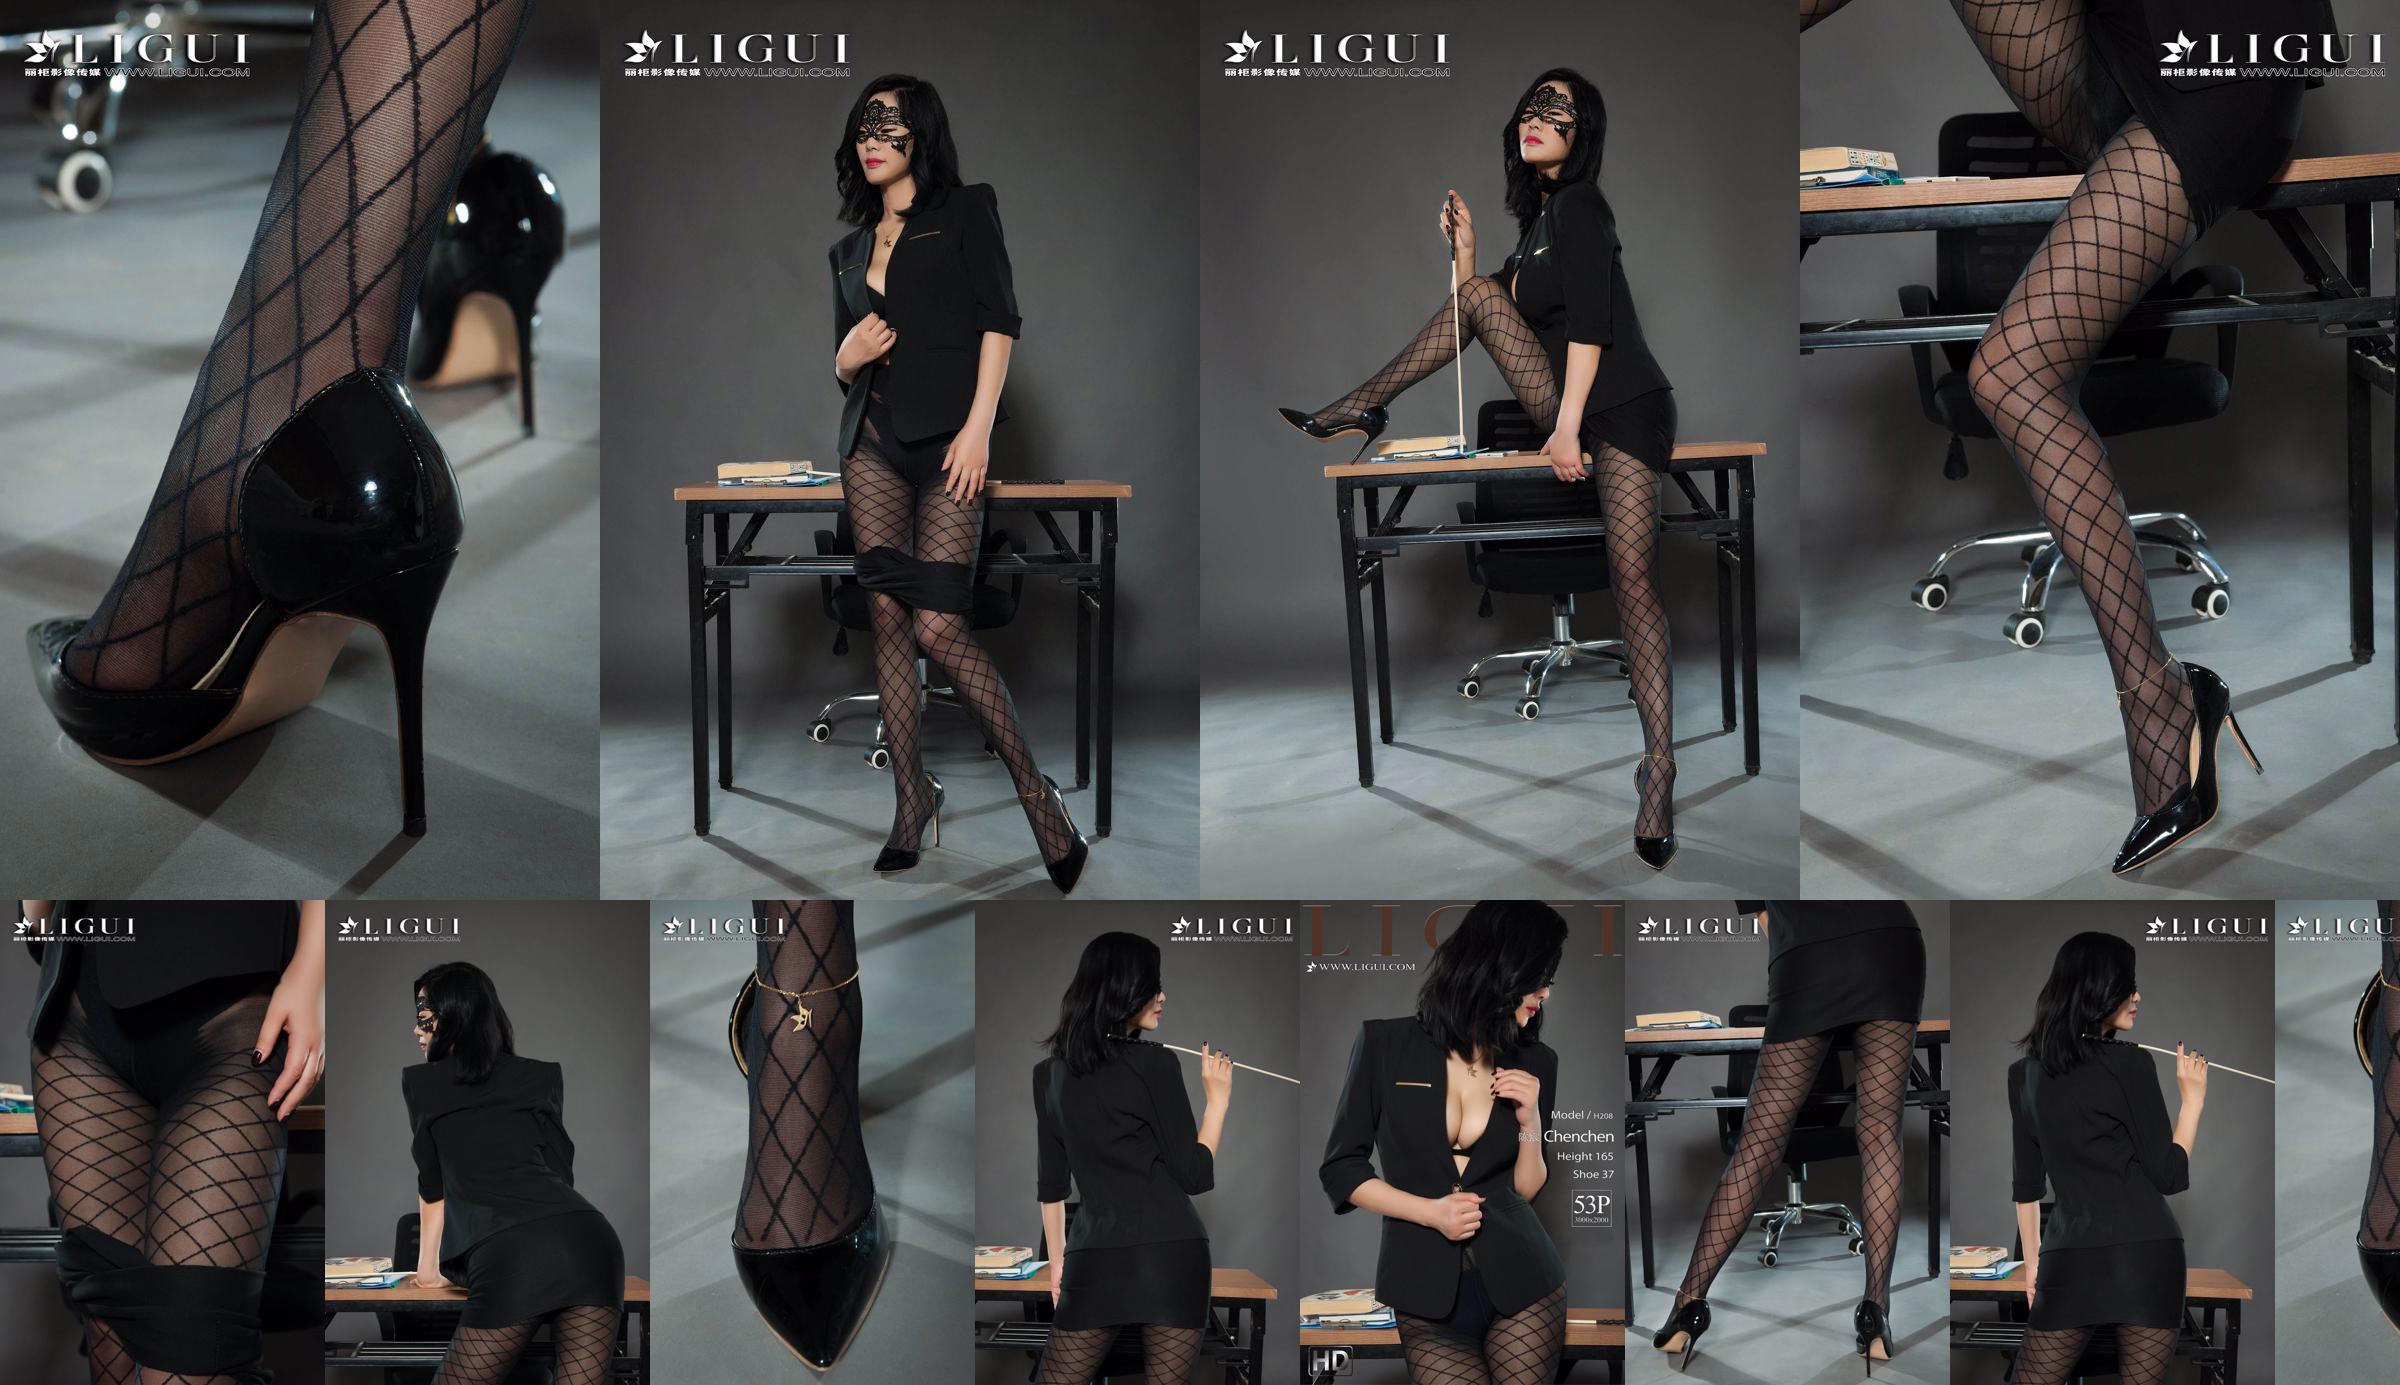 Người mẫu chân Chen Chen "Black Silk Milf" [Ligui Liguil] Vẻ đẹp Internet No.812e0c Trang 1